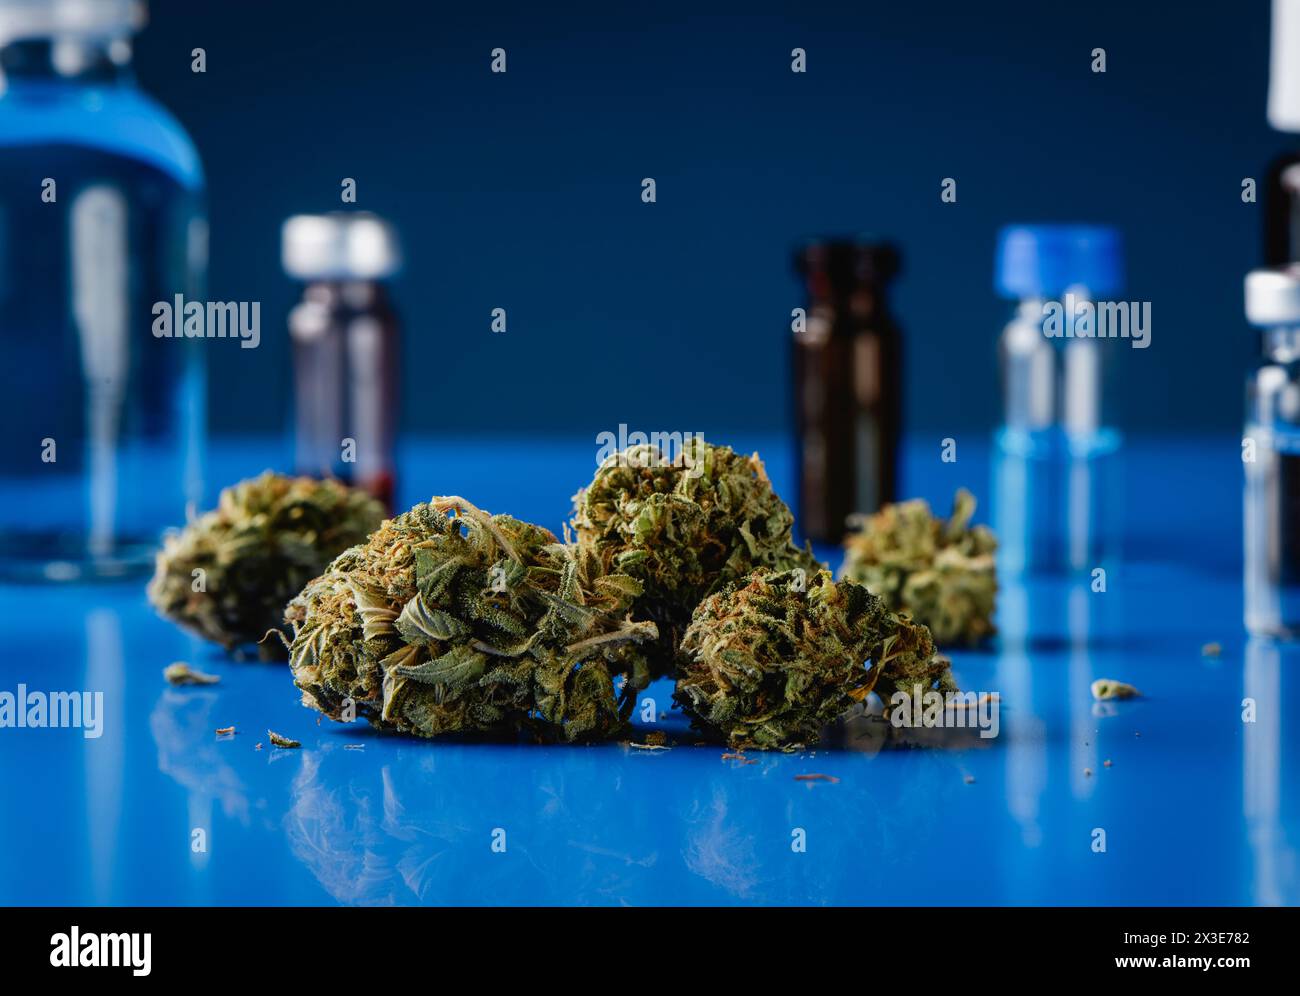 Nahaufnahme einiger Cannabisknospen auf einem blauen Labortisch, neben einigen Flaschen im Hintergrund Stockfoto